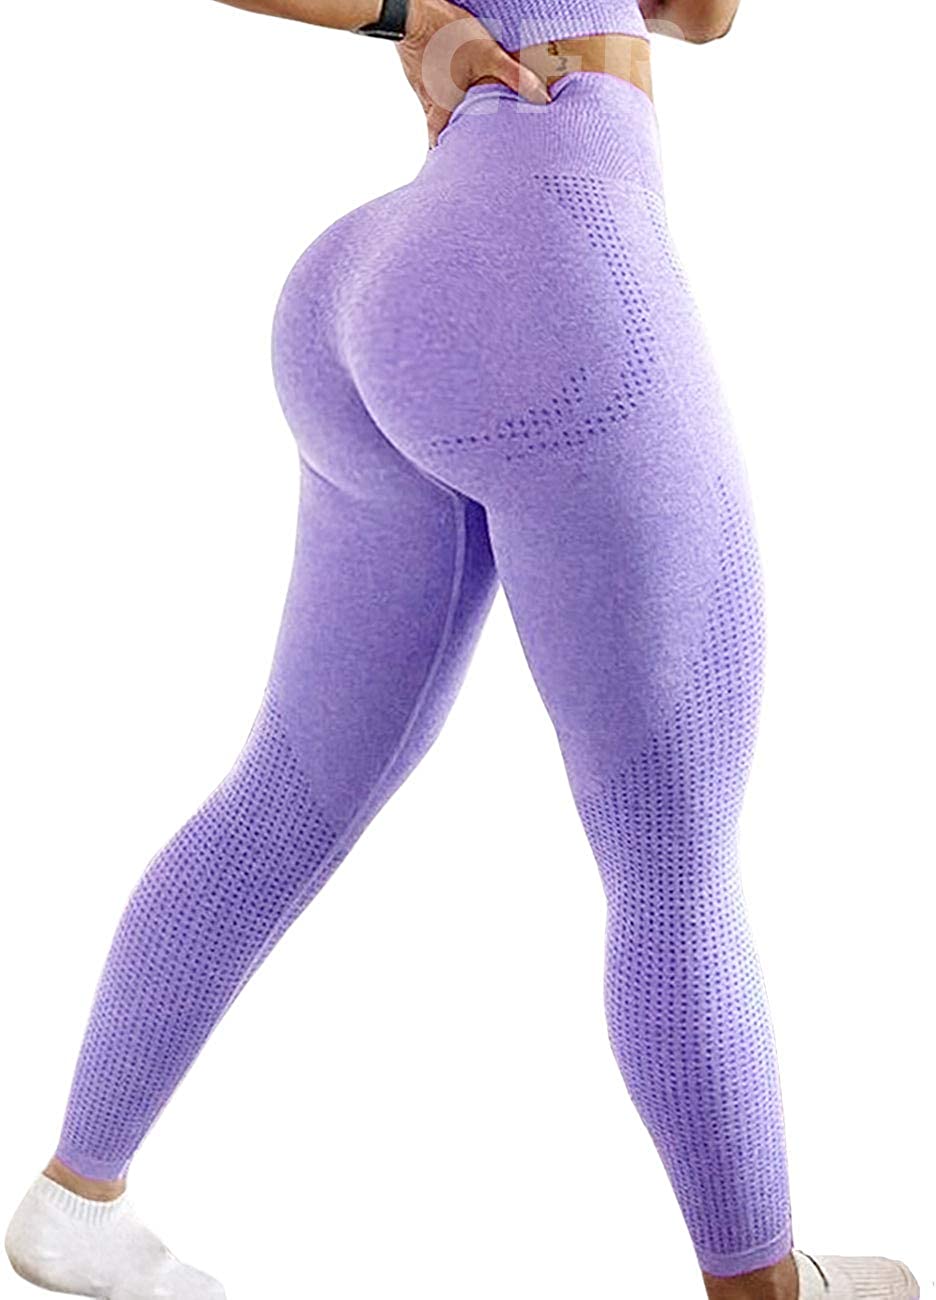  CFR Women Workout Biker Shorts Seamless Scrunch Butt Lifting High  Waist Leggings Squat Proof Sport Gym Yoga Hot Pants A-Ruched Booty Black